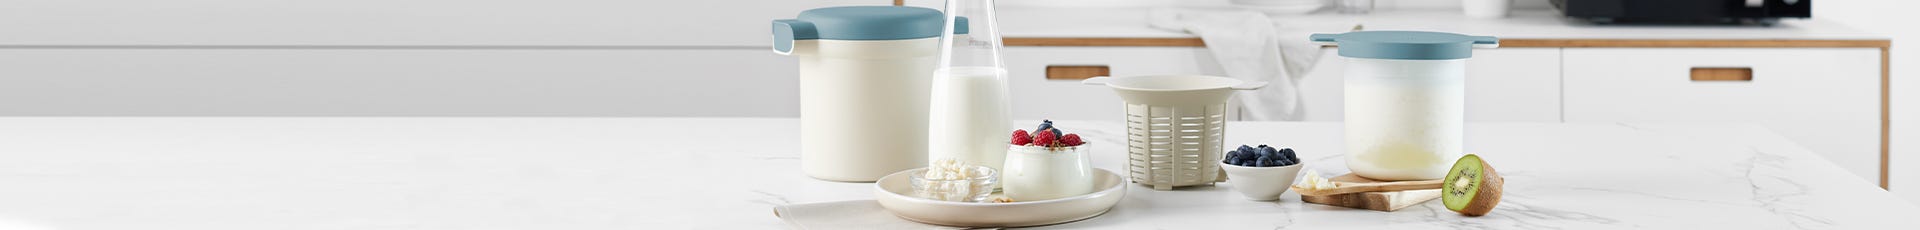 Kefir & Yogurt Maker Recipes